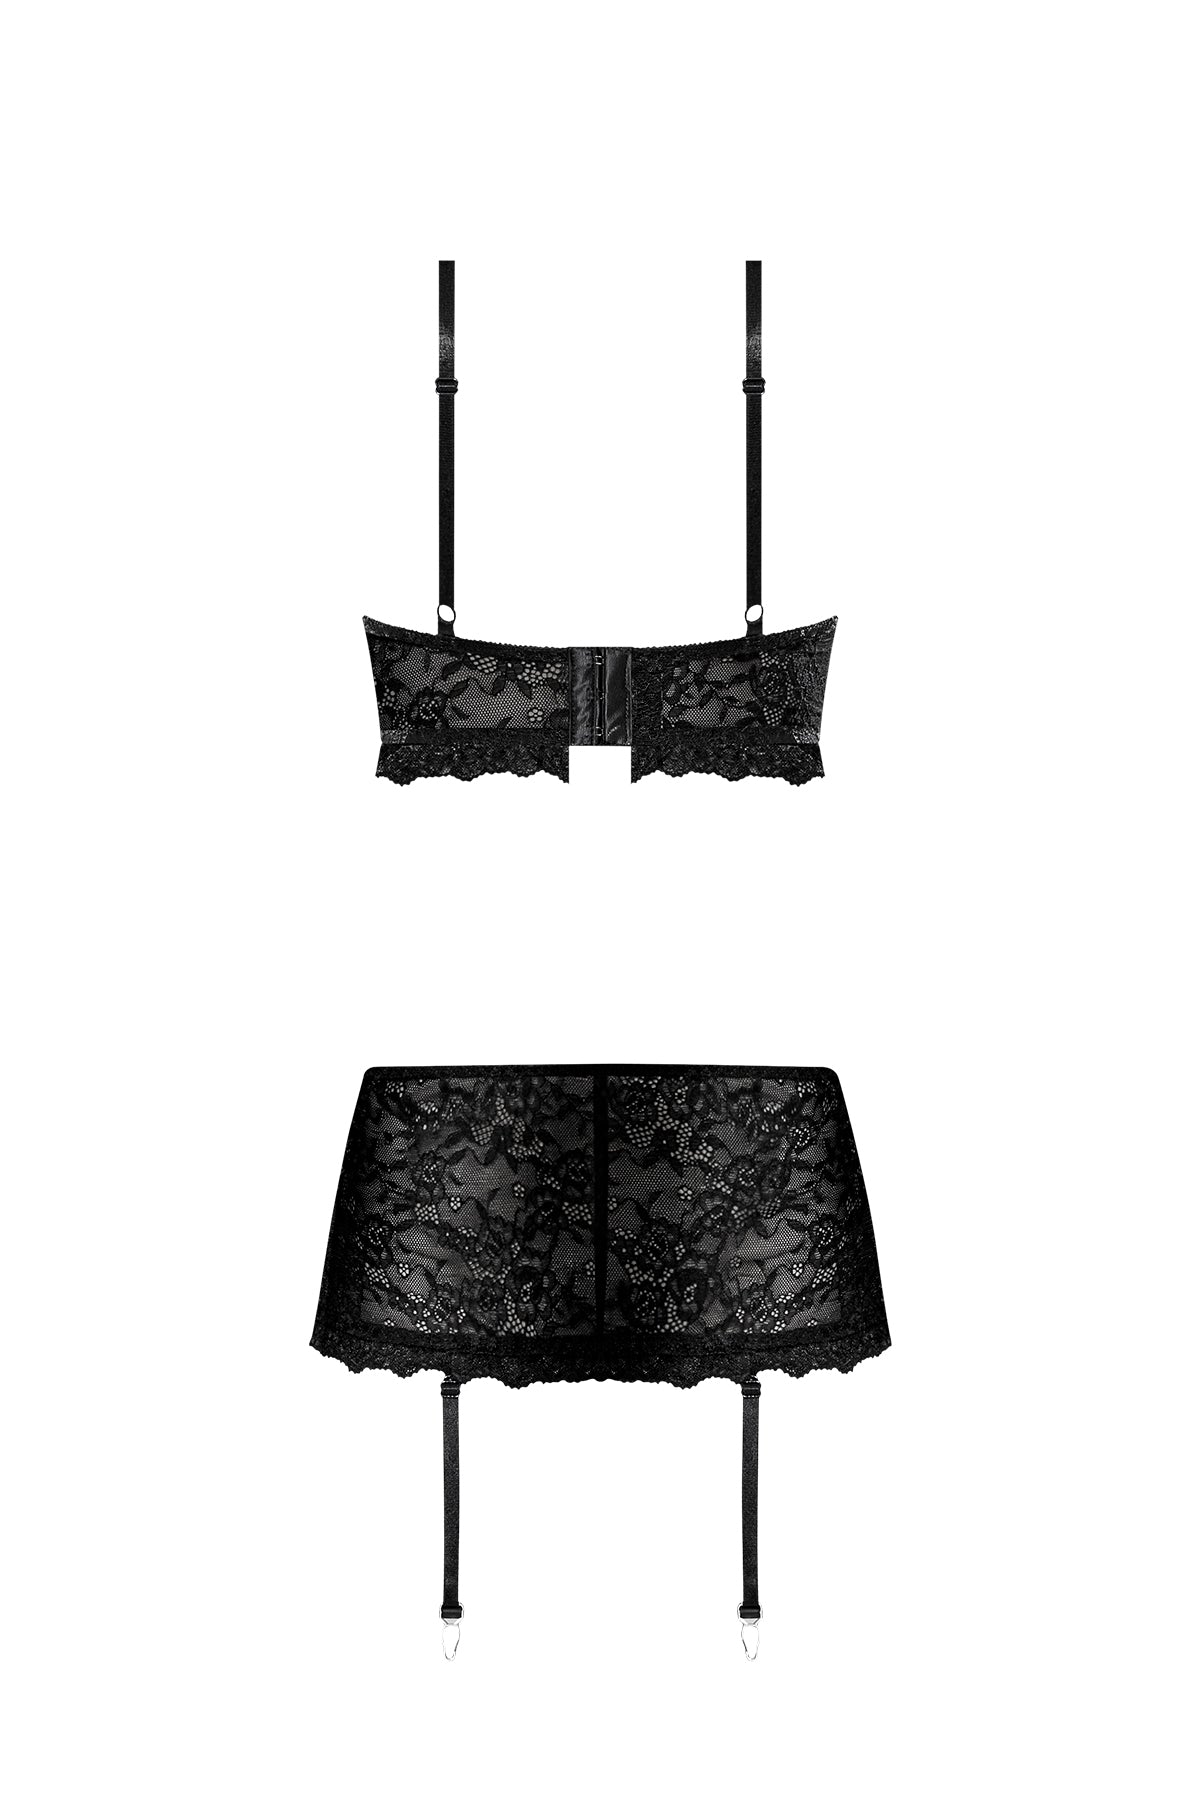 Magic Silk Ooh La Lace Bralette, Garter Skirt & G-String Black